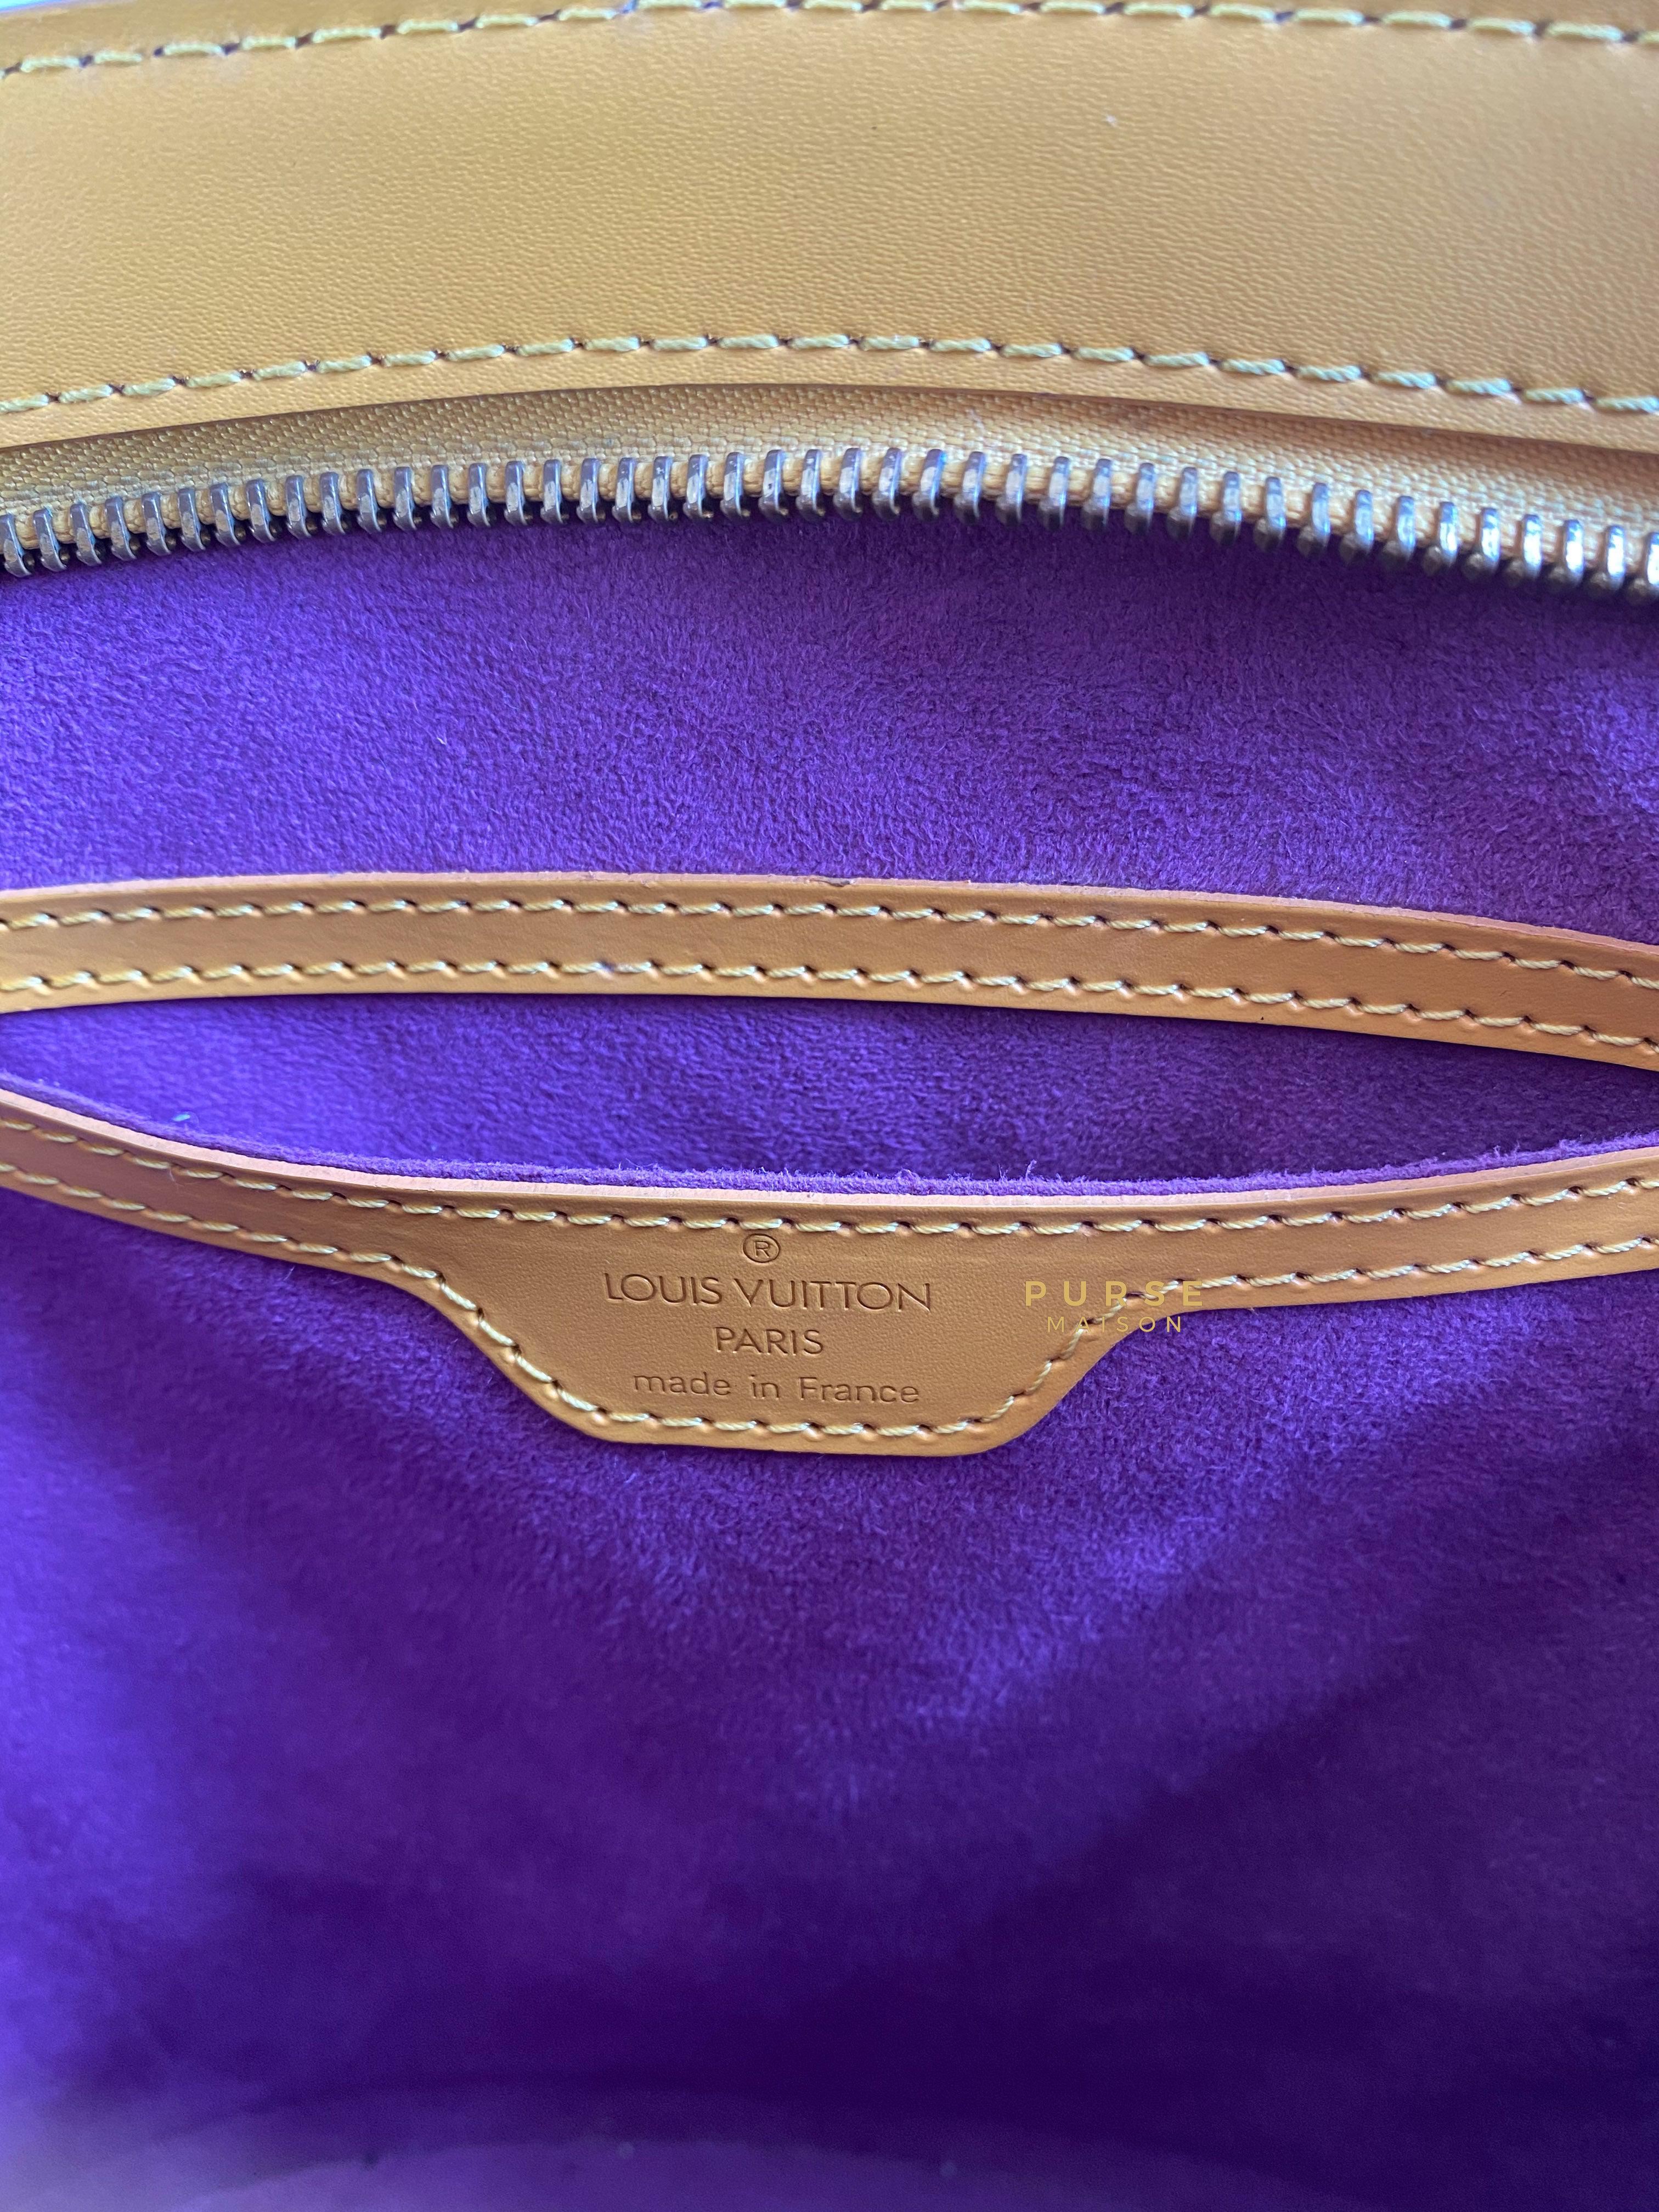 Louis Vuitton St. Jacques PM Yellow Epi Leather (Date Code: VI0984) | Purse Maison Luxury Bags Shop